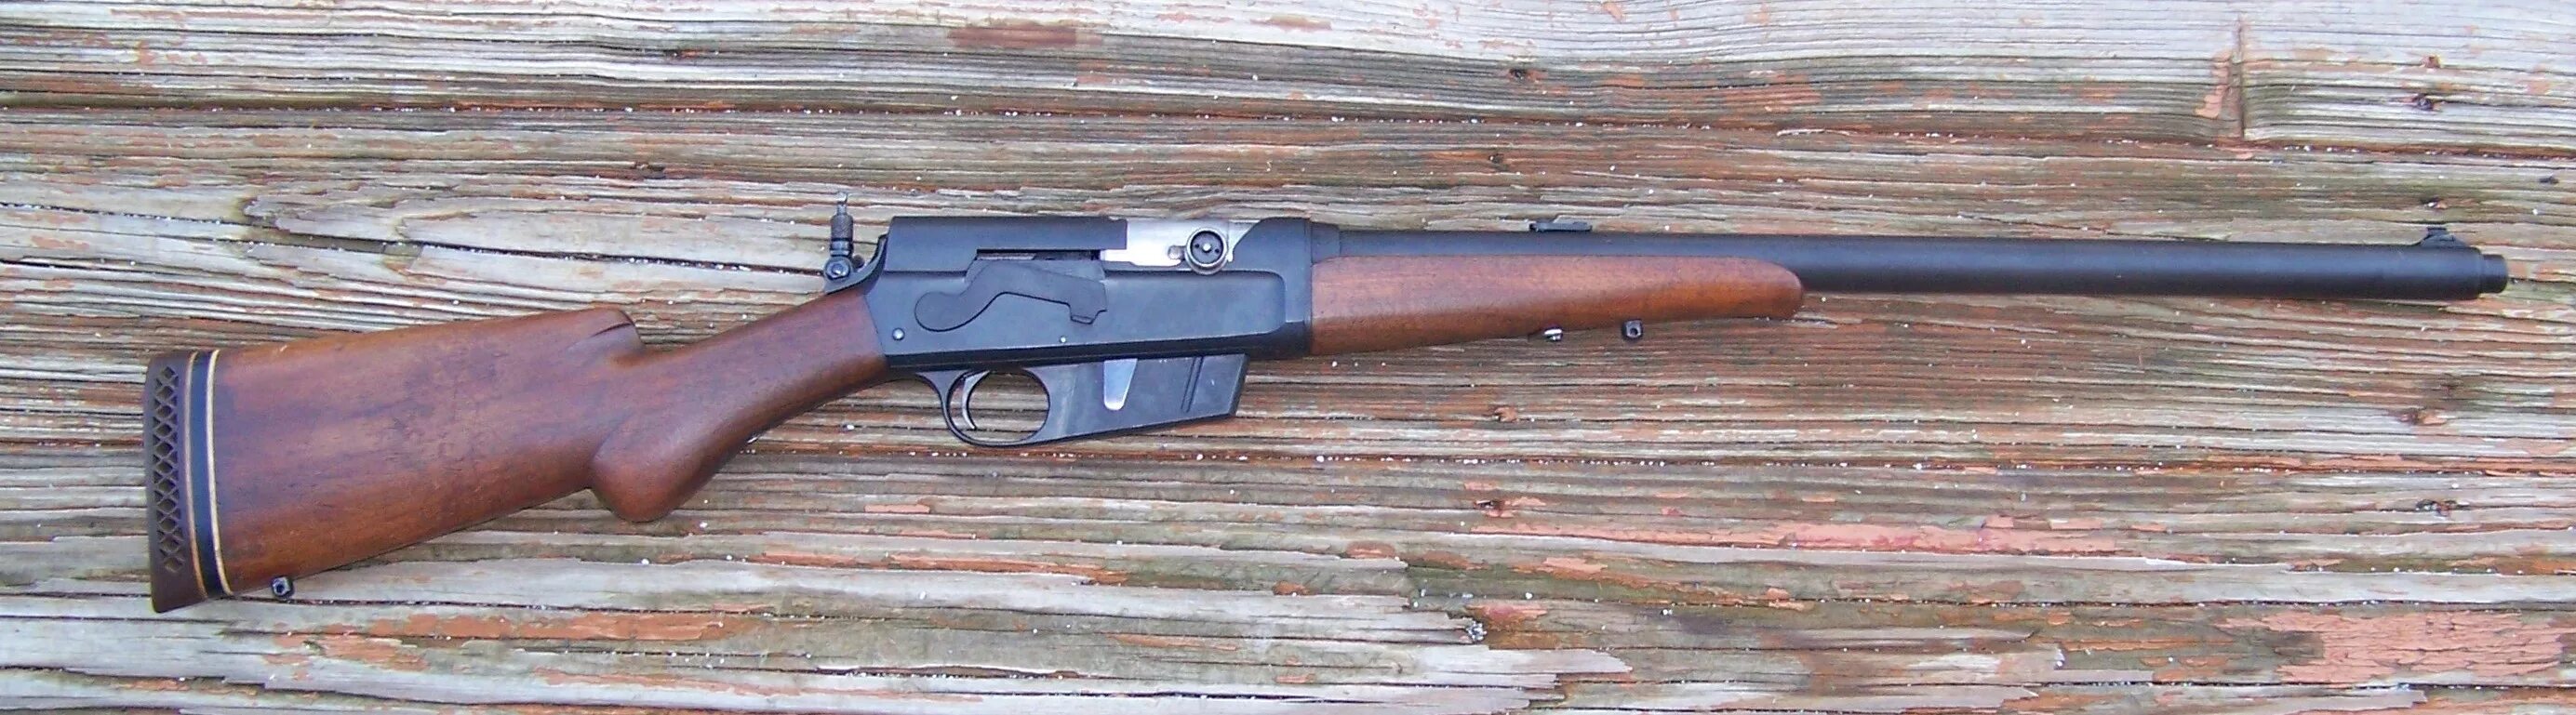 Модель 8 19. Винтовка Remington 8. Ремингтон модель 8 карабин. Винтовка Remington model 8. Remington model 8 .35 Rem (9x49 мм).